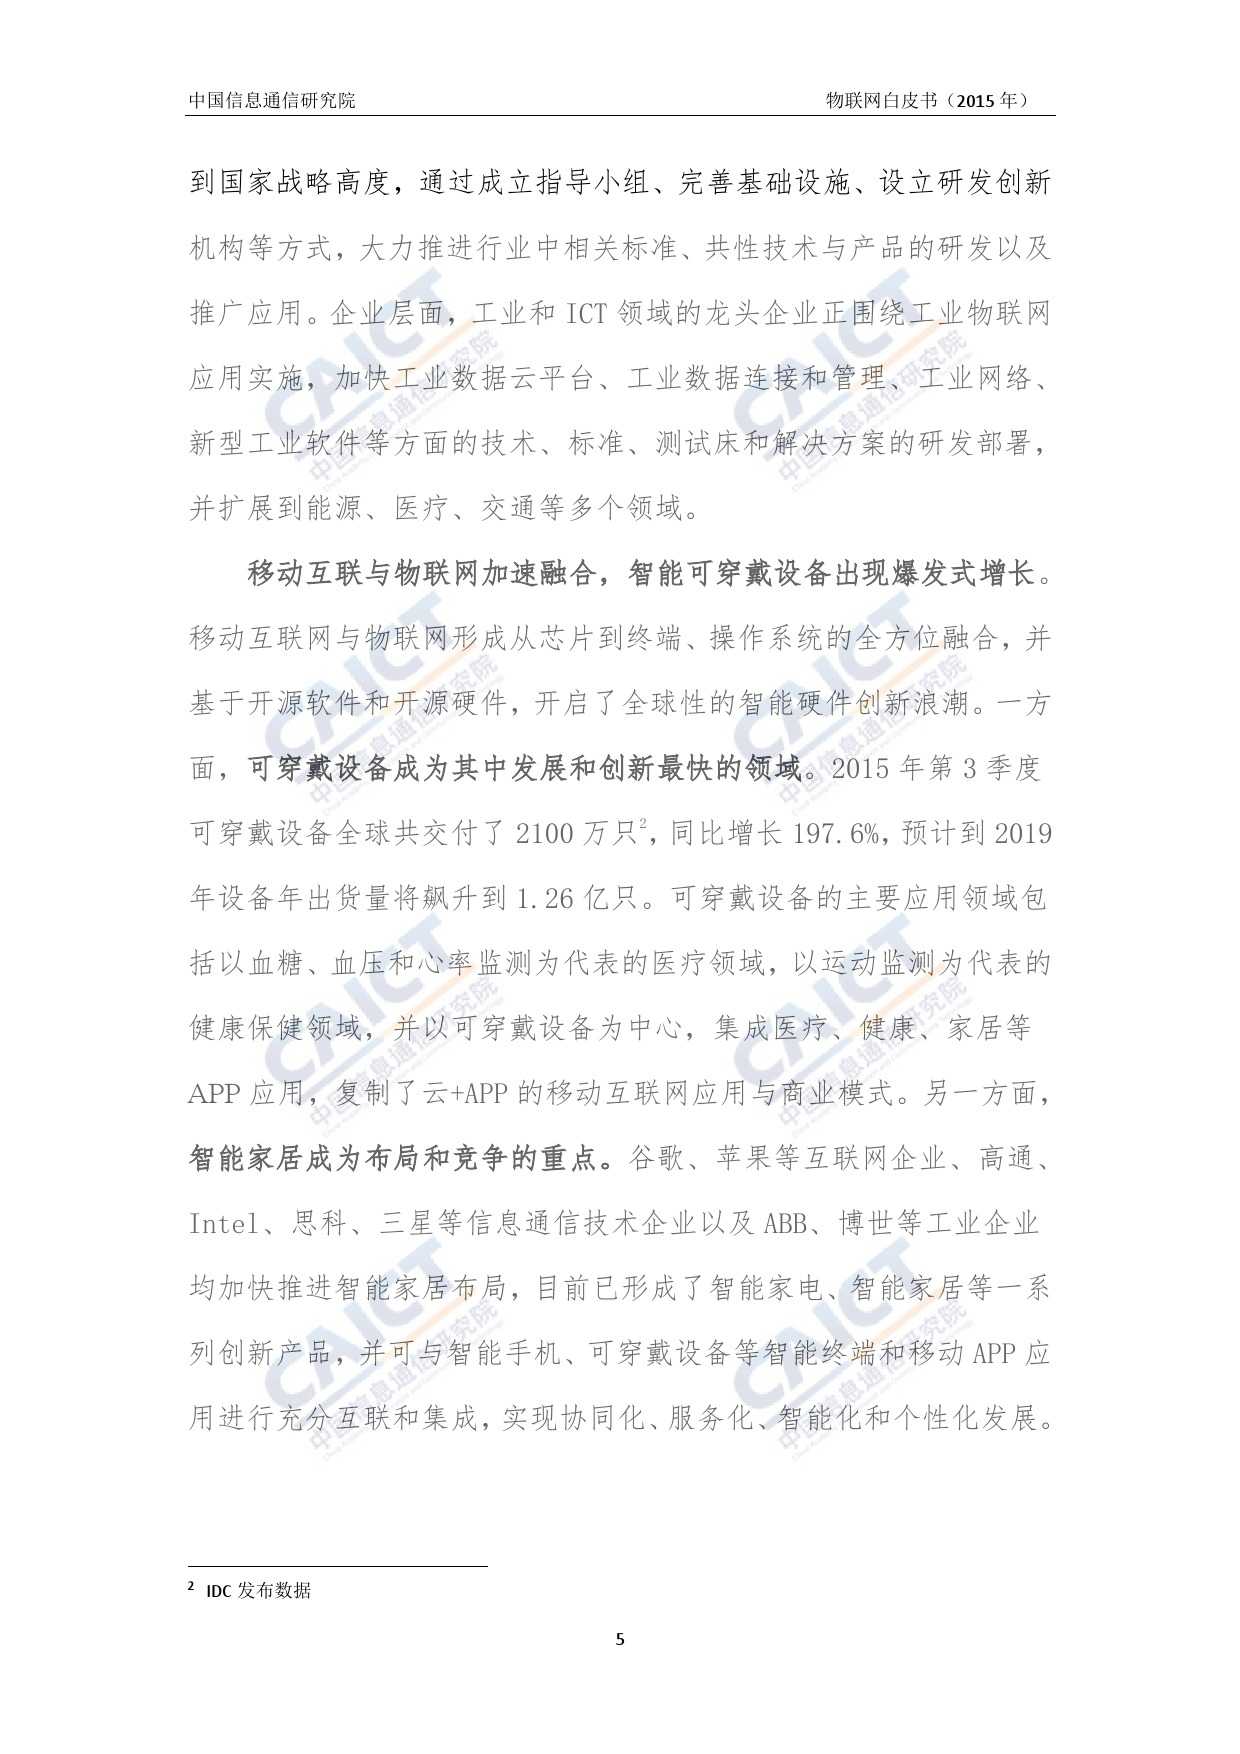 中国信息通信研究院：2015年物联网白皮书_000009